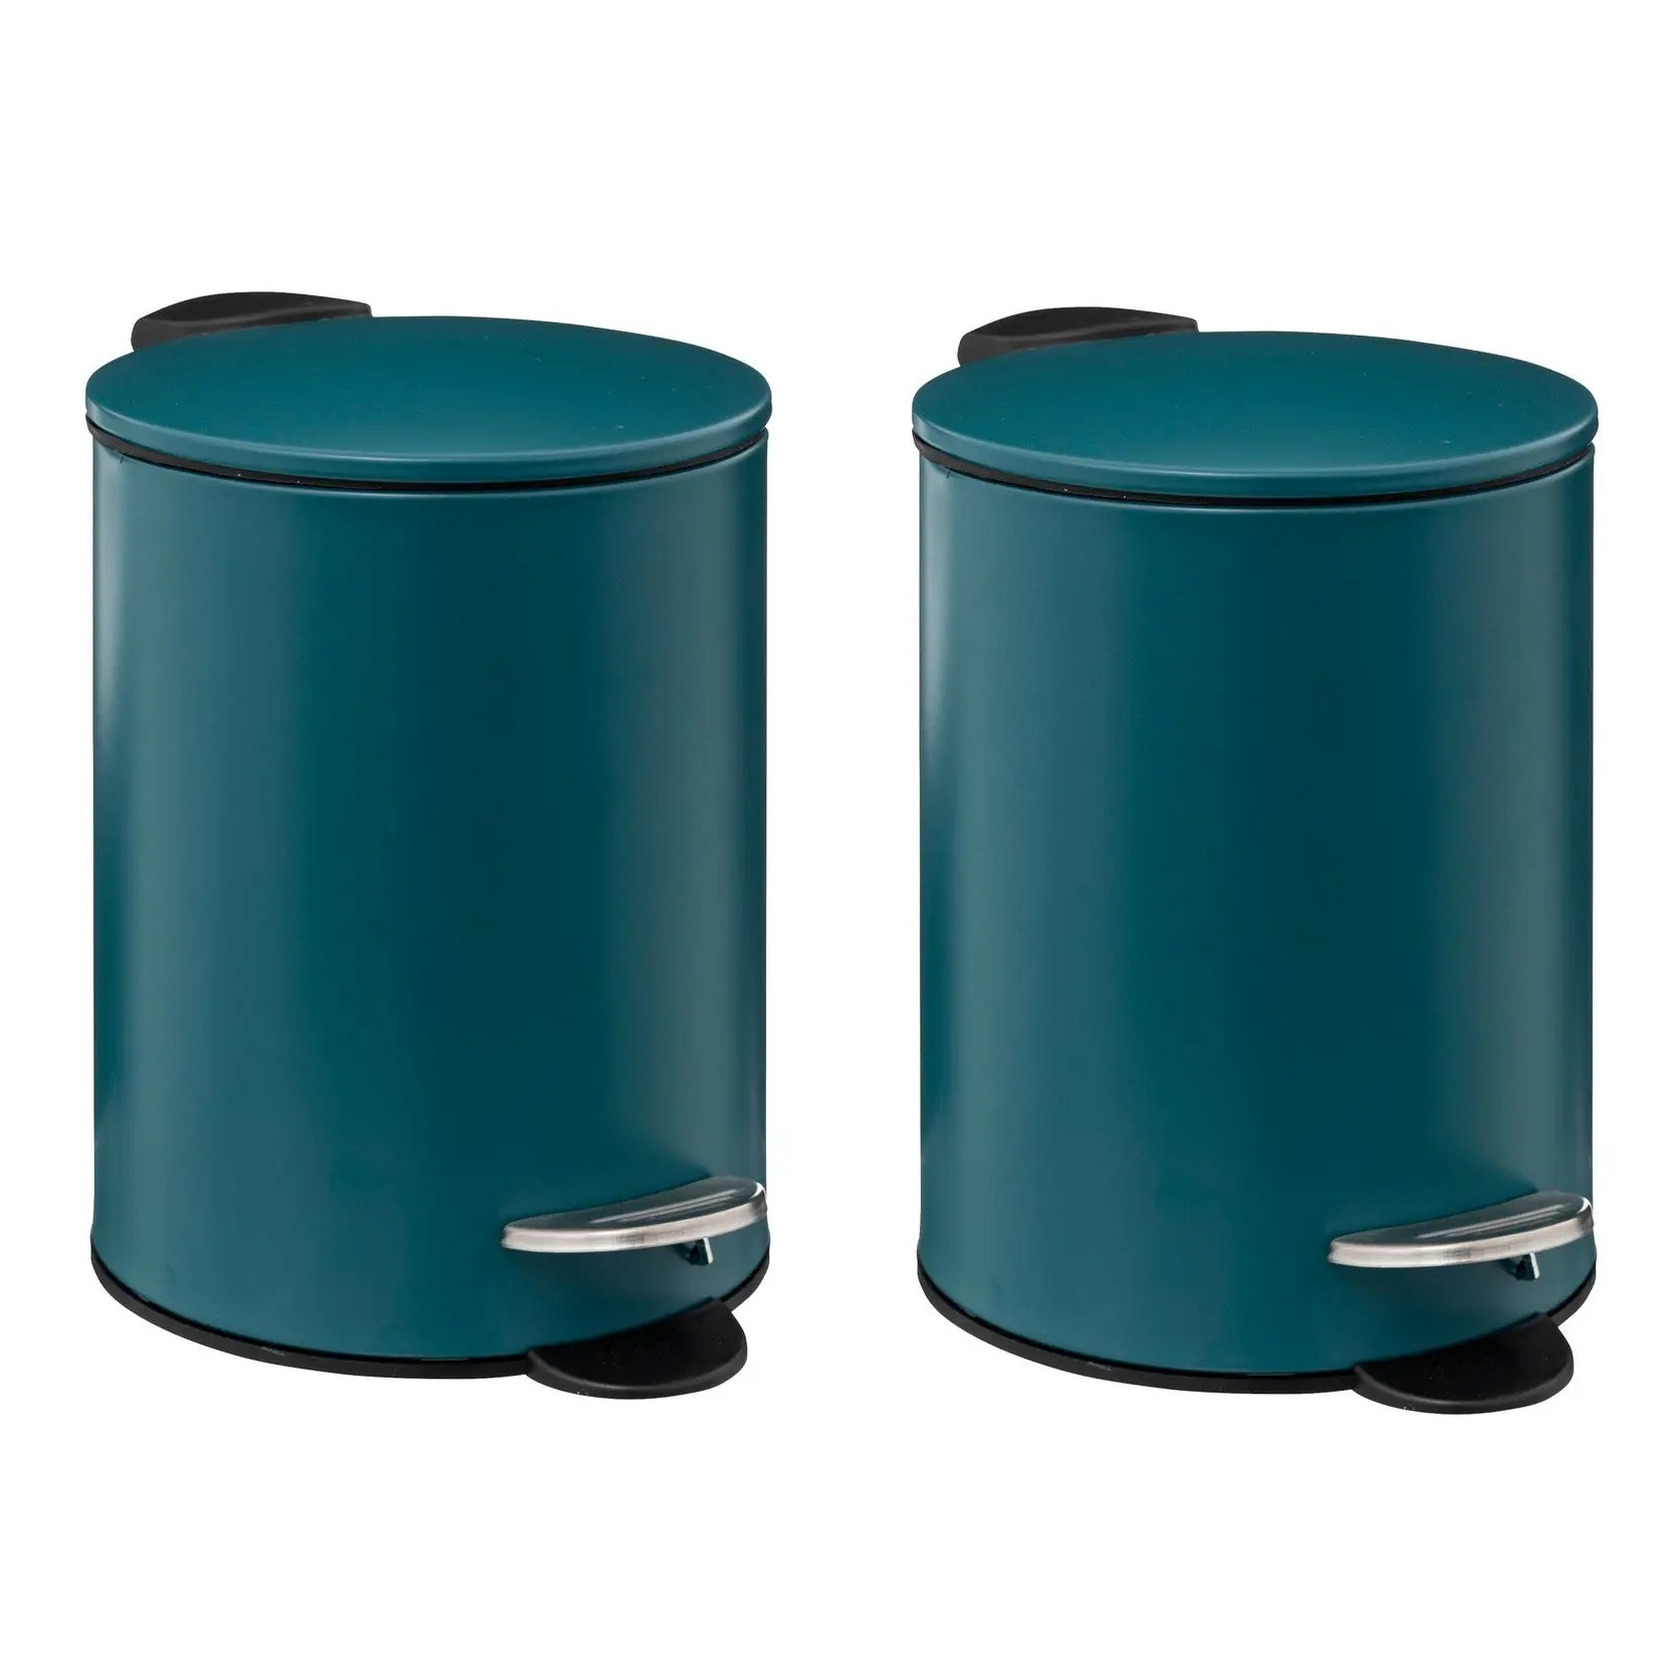 Prullenbak-pedaalemmer 2x metaal blauw 3 liter 16 x 25 cm Badkamer-toilet